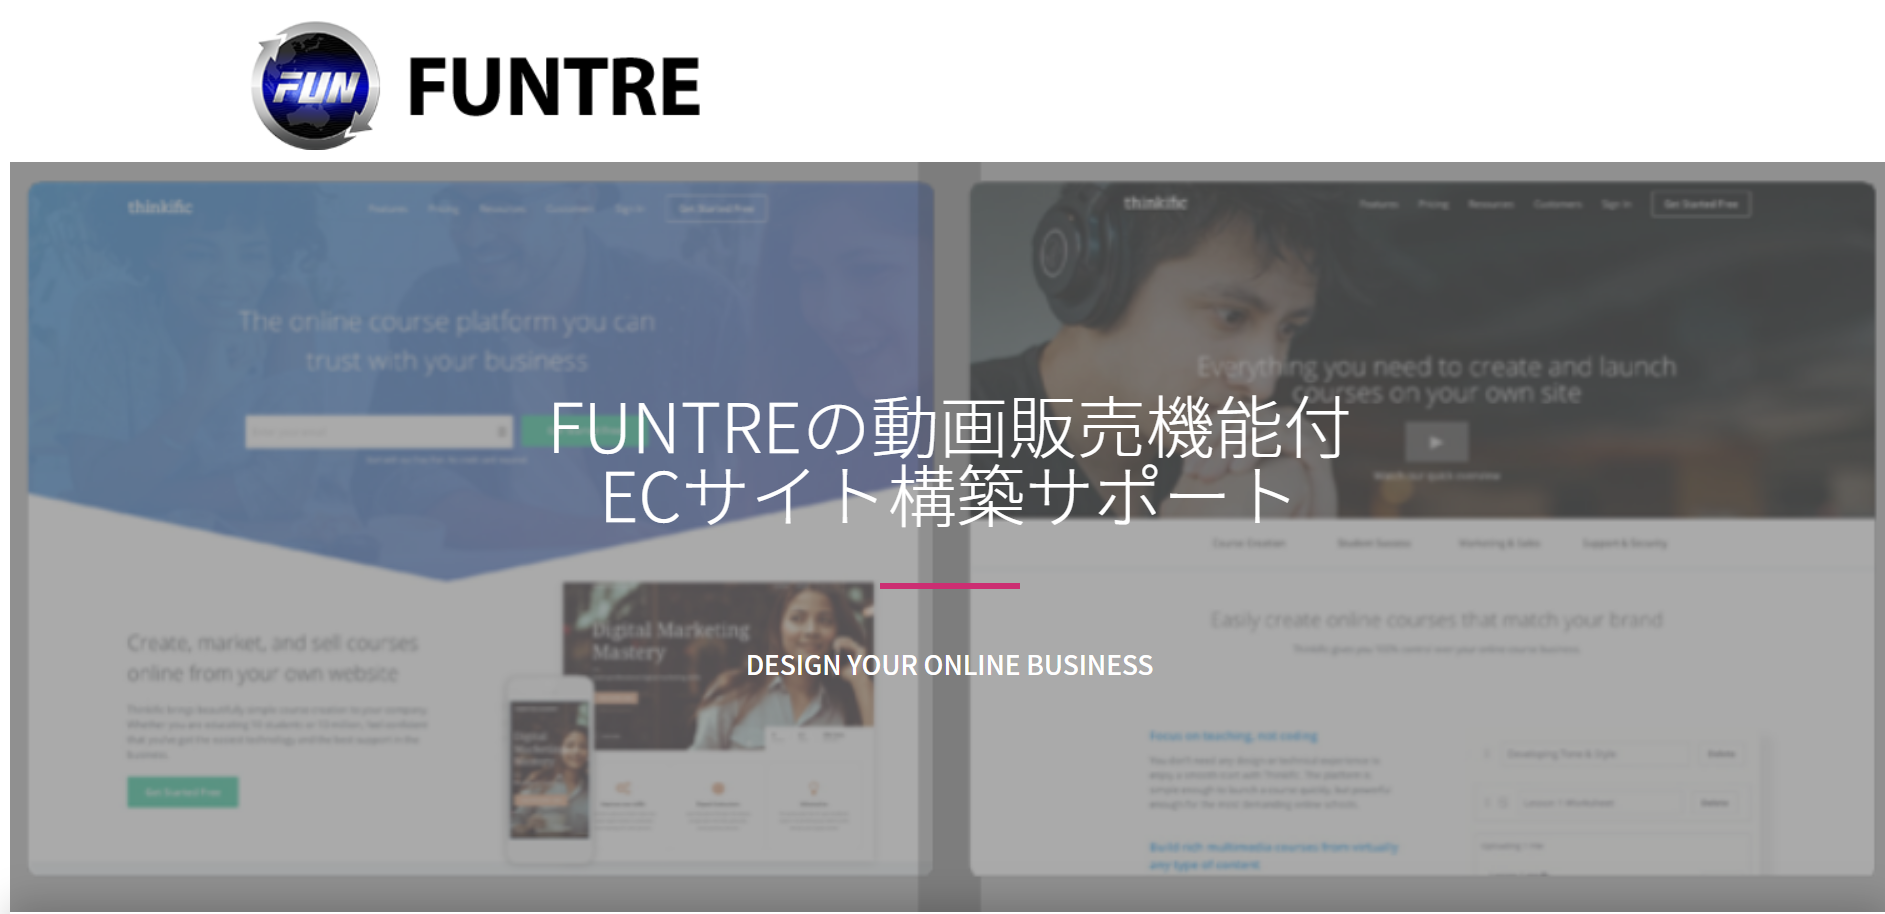 FunTre株式会社のFunTre株式会社:アプリ開発サービス